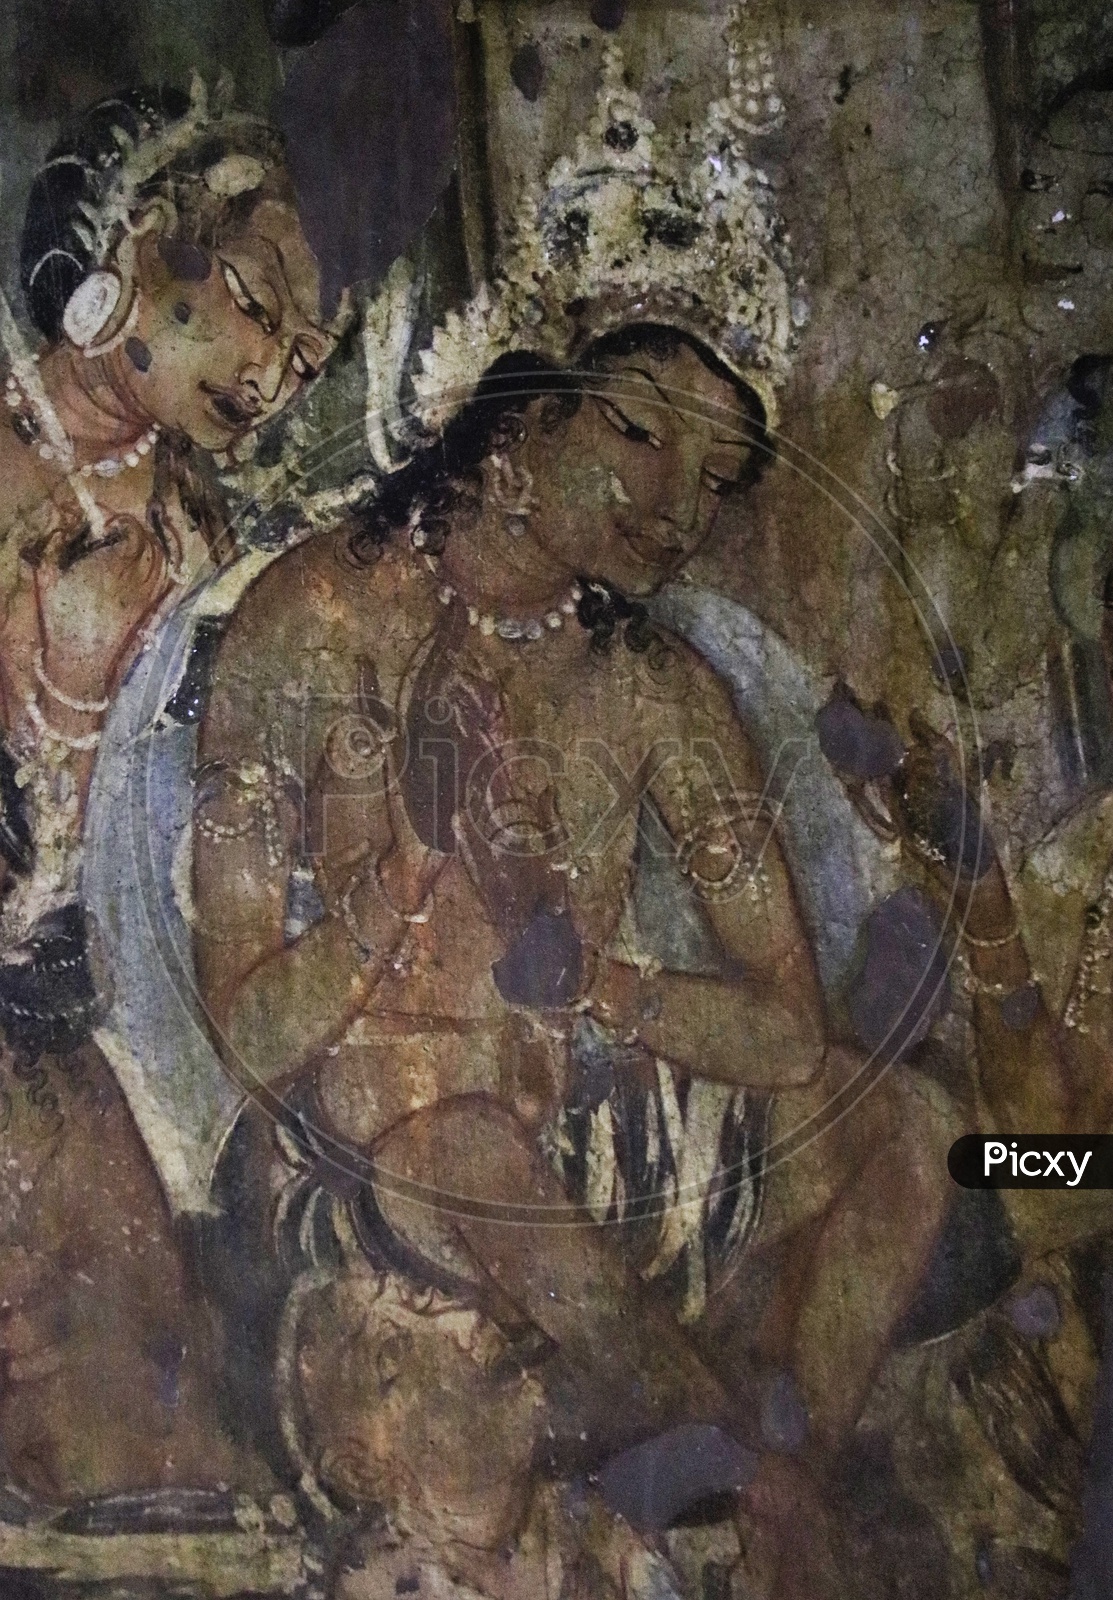 Ancient Wall Arts or Wall Paintings of Indian Civilization at Ajanta Caves